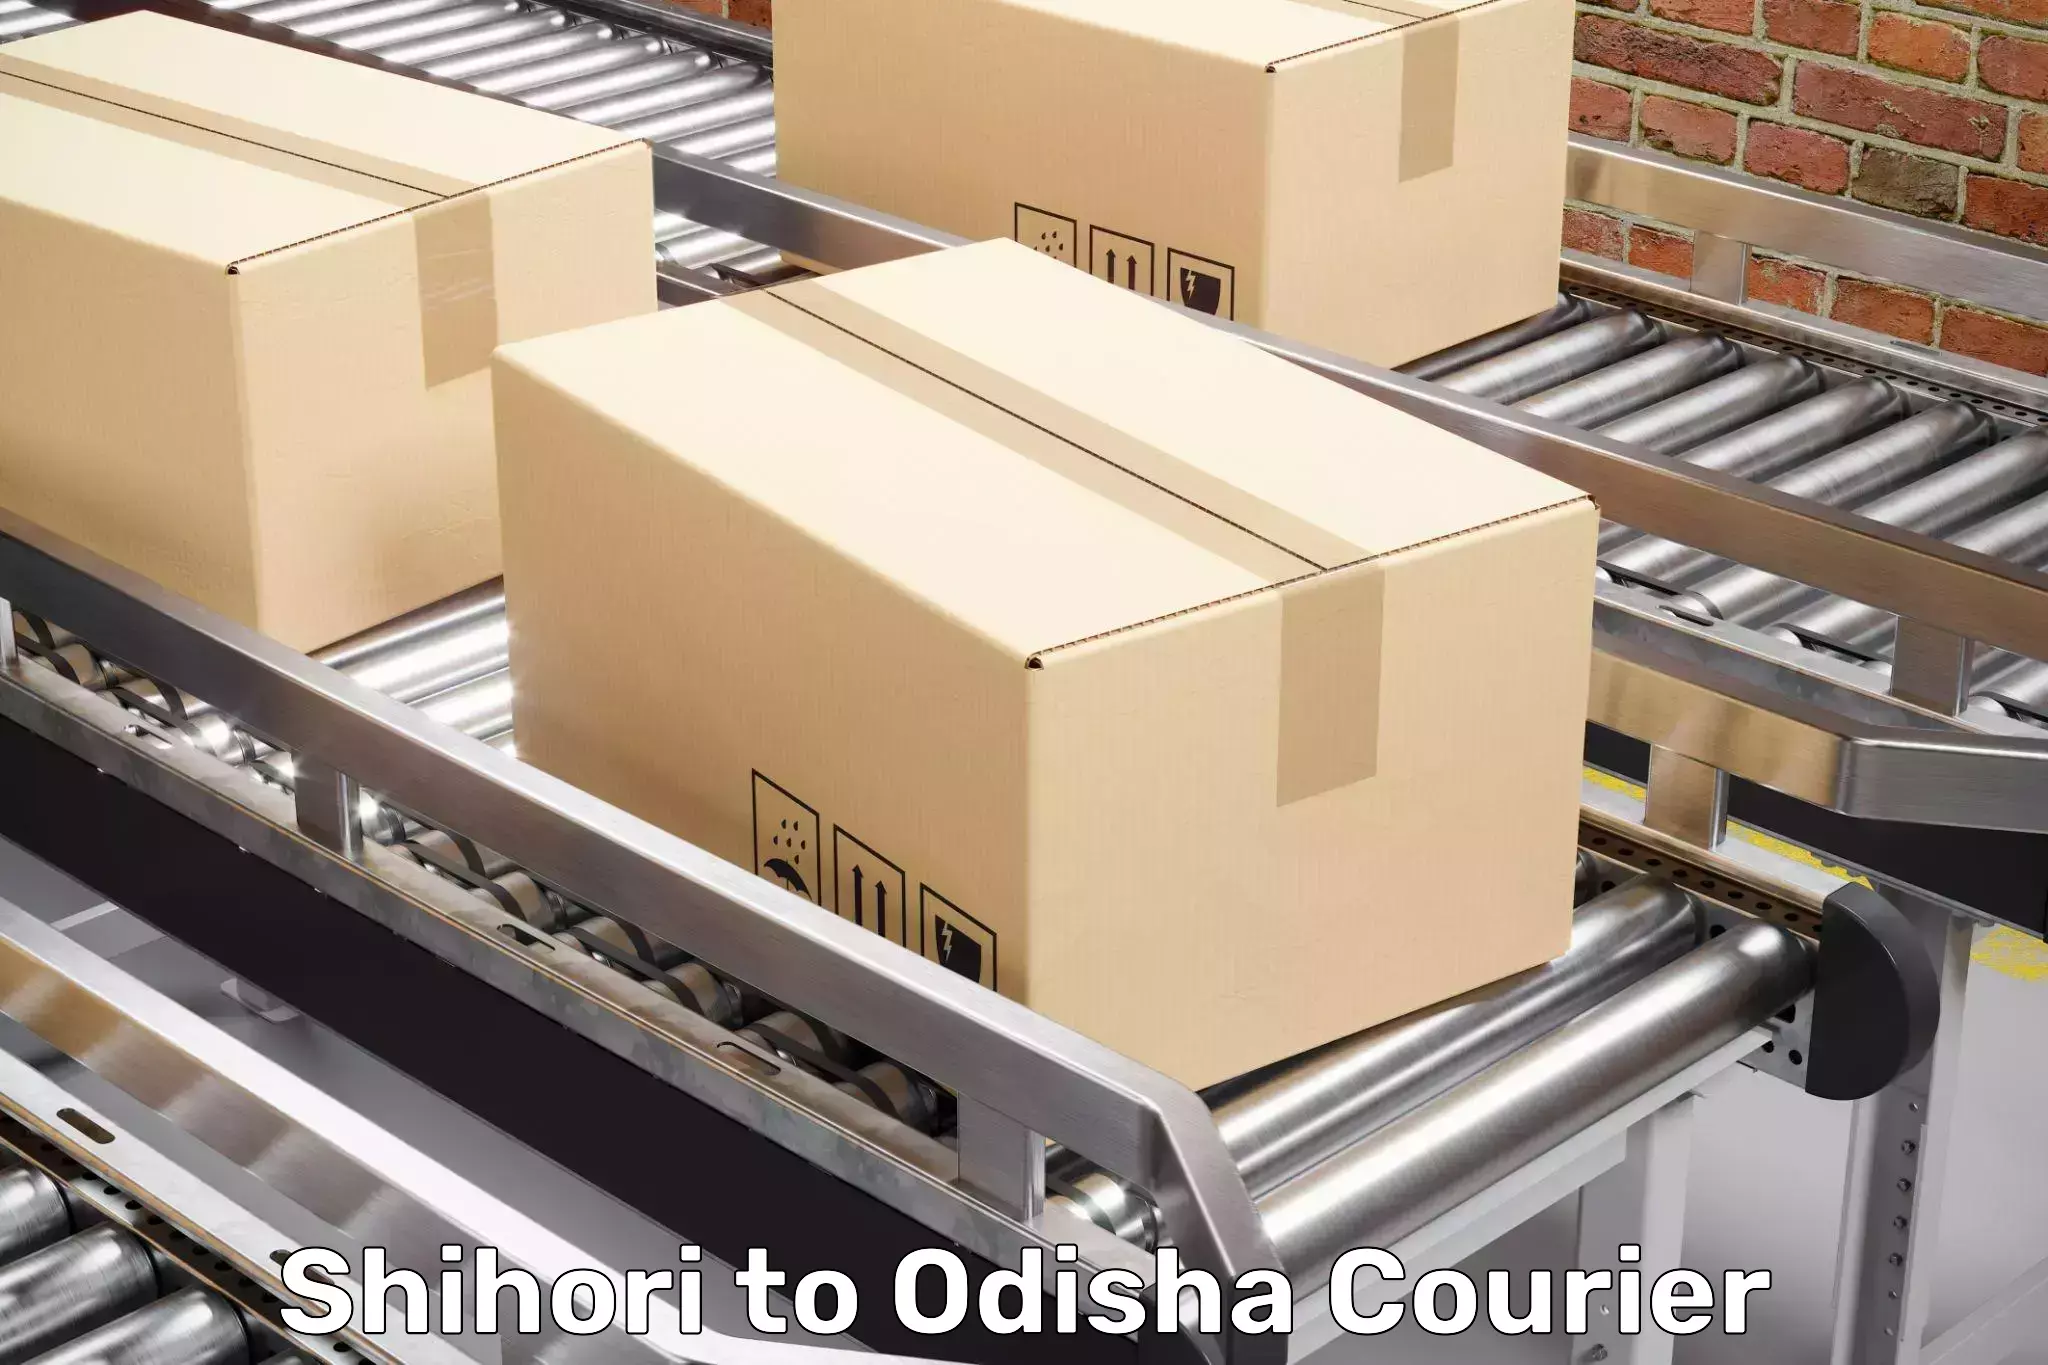 Full-service furniture transport in Shihori to Odisha